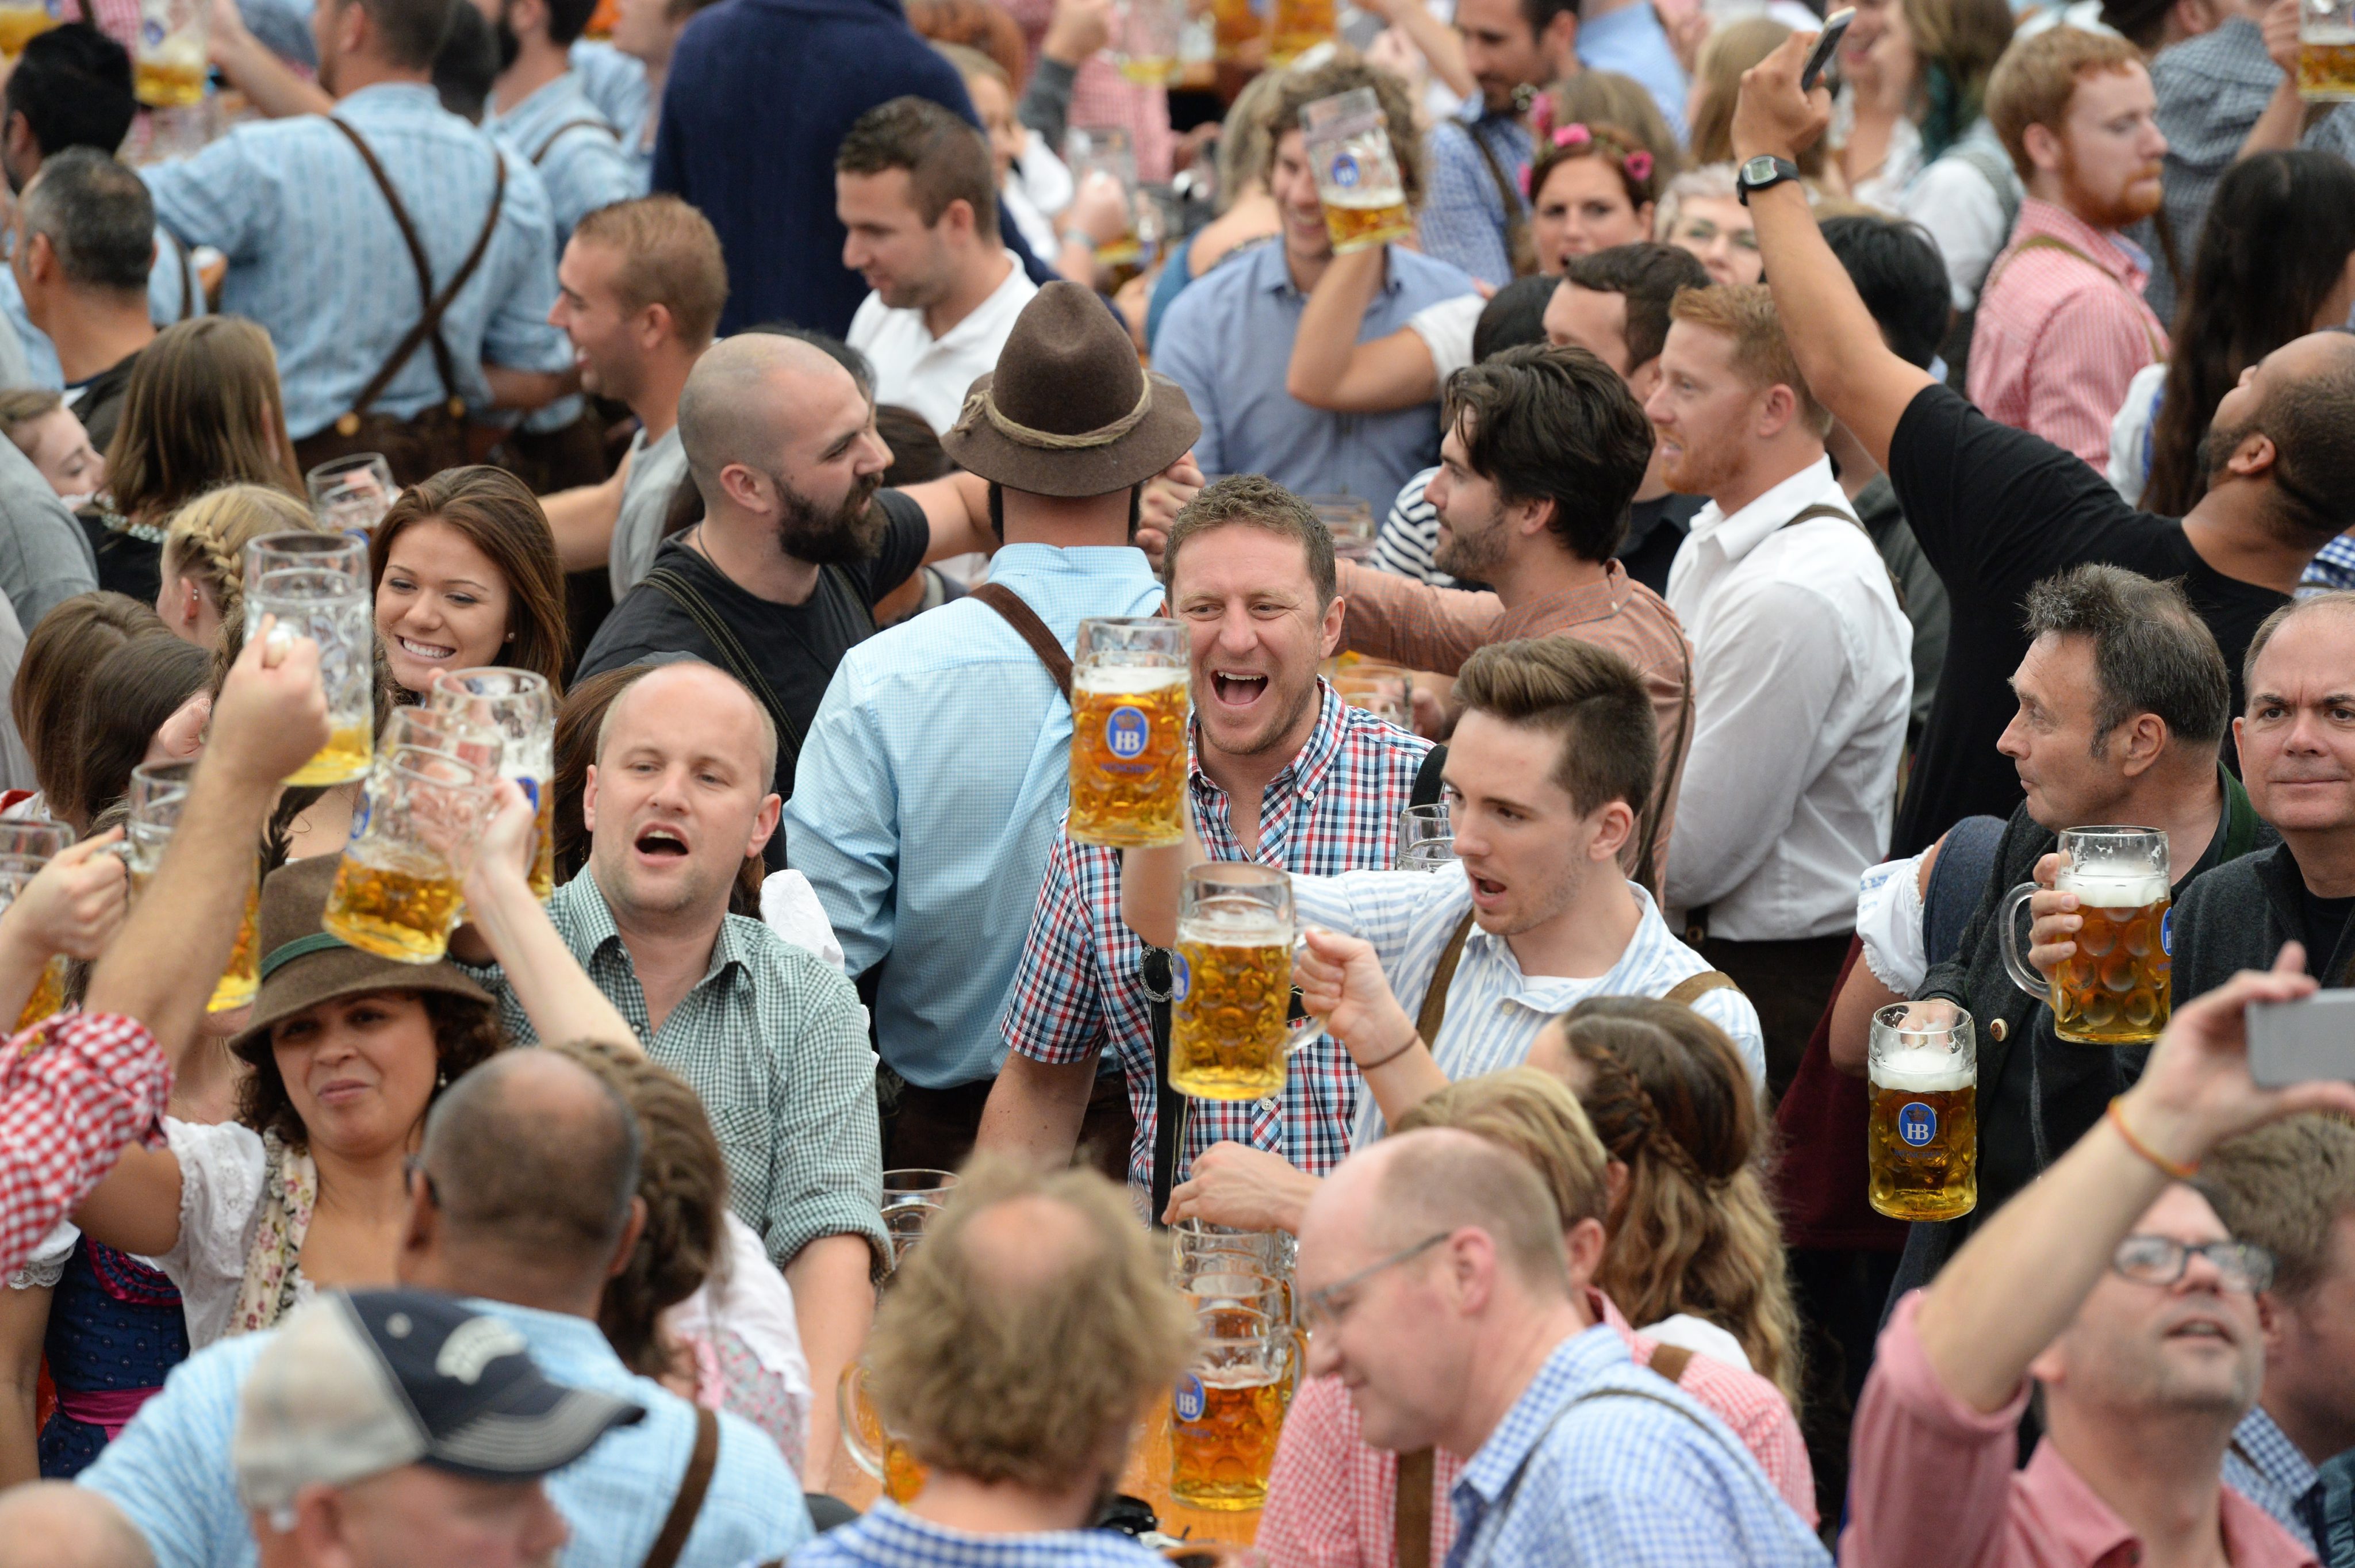 Традиционният празник на бирата в Мюнхен бе открит при строги мерки за сигурност.Главният град на германската провинция Бавария това лято пострада от два атентата, отговорност за които поеха джихадистите, и от нападение, извършено от психично неуравновесен човек.Кметът на Мюнхен Дитер Райтер даде старта на 183-ия бирфест като с два удара с чук изби чепа на първото буре. За пръв път ливадата - Терезиенвайзе – която посреща гостите, е заобиколена с ограда; достъпът на хора с големи раницие забранен, а на място постоянно са разположени 600 полицаи. Организаторите се опасяват от спад на посещаемостта заради тревоги, свързани с безопасността. През 2015 г. Октоберфест привлече 5,9 милиона посетители или с 400 000 по-малко отколкото през 2014, главно заради миграционната криза.